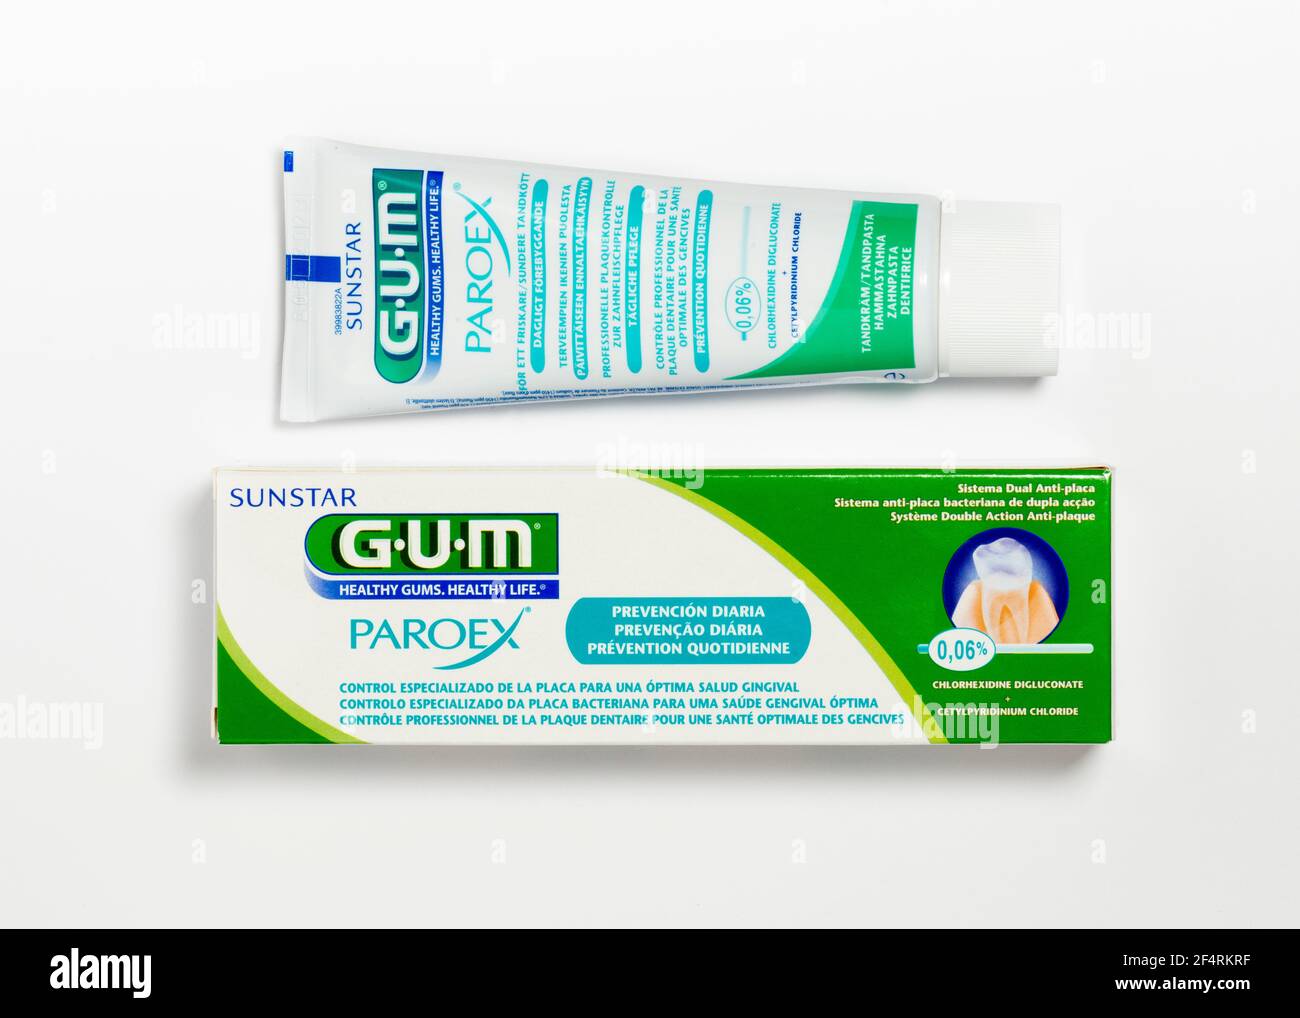 GUM Paroex with 0.06 % chlorhexidine digluconate toothpaste by Sunstar on white Stock Photo